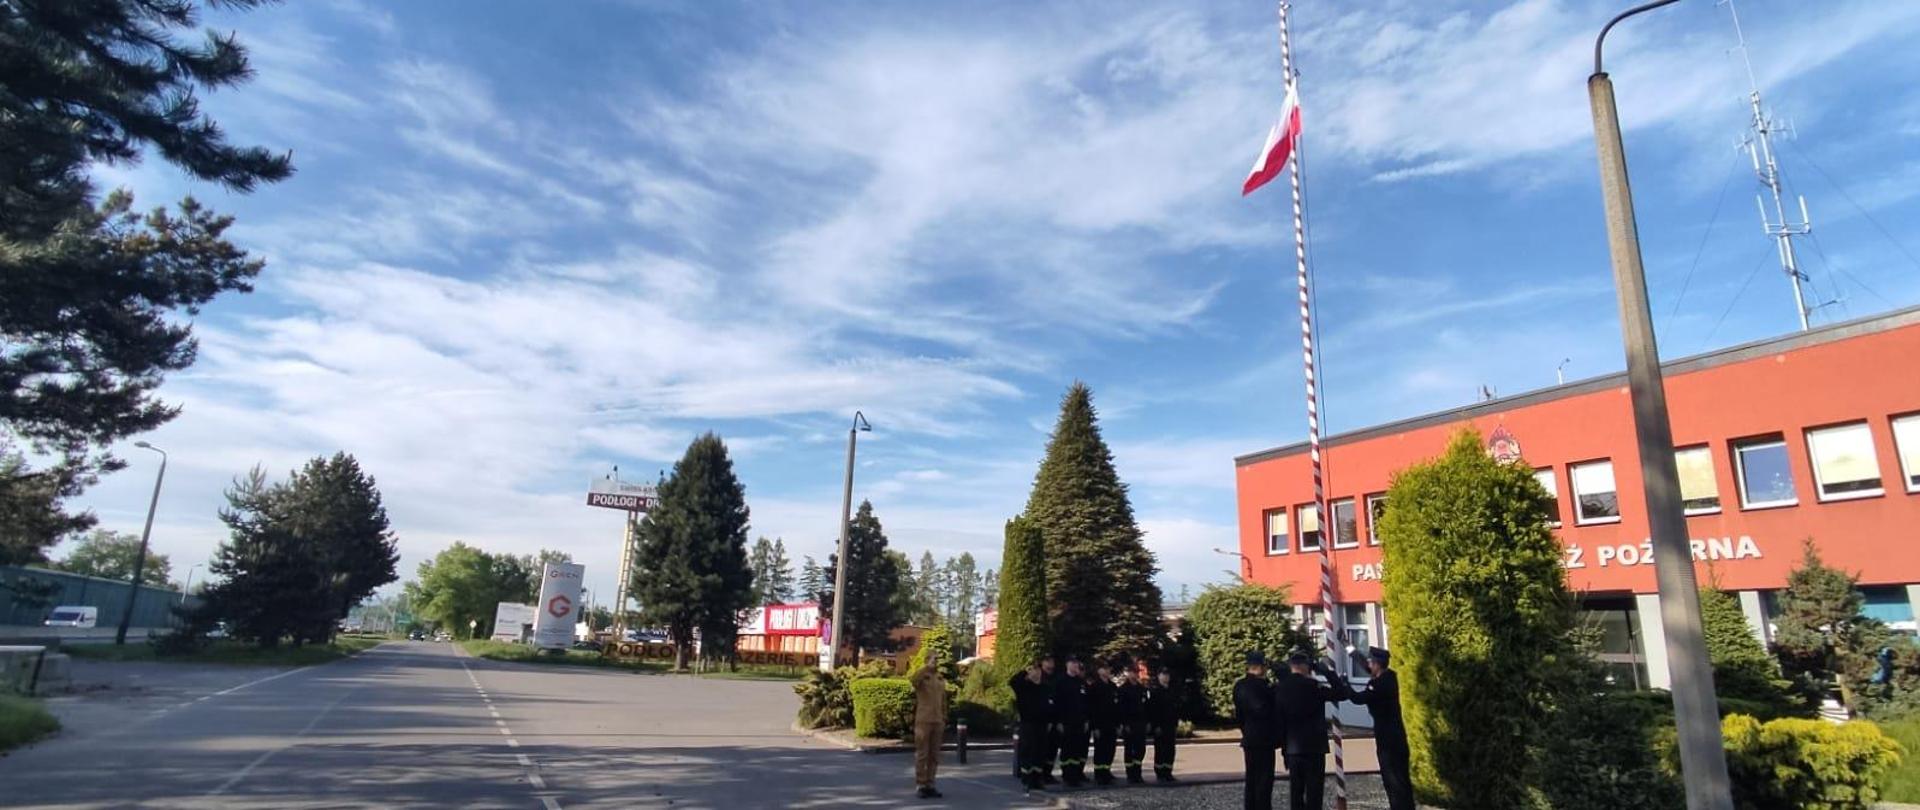 Uroczyste podniesienie flagi Państwowej przez strażaków z KP PSP w Pszczynie